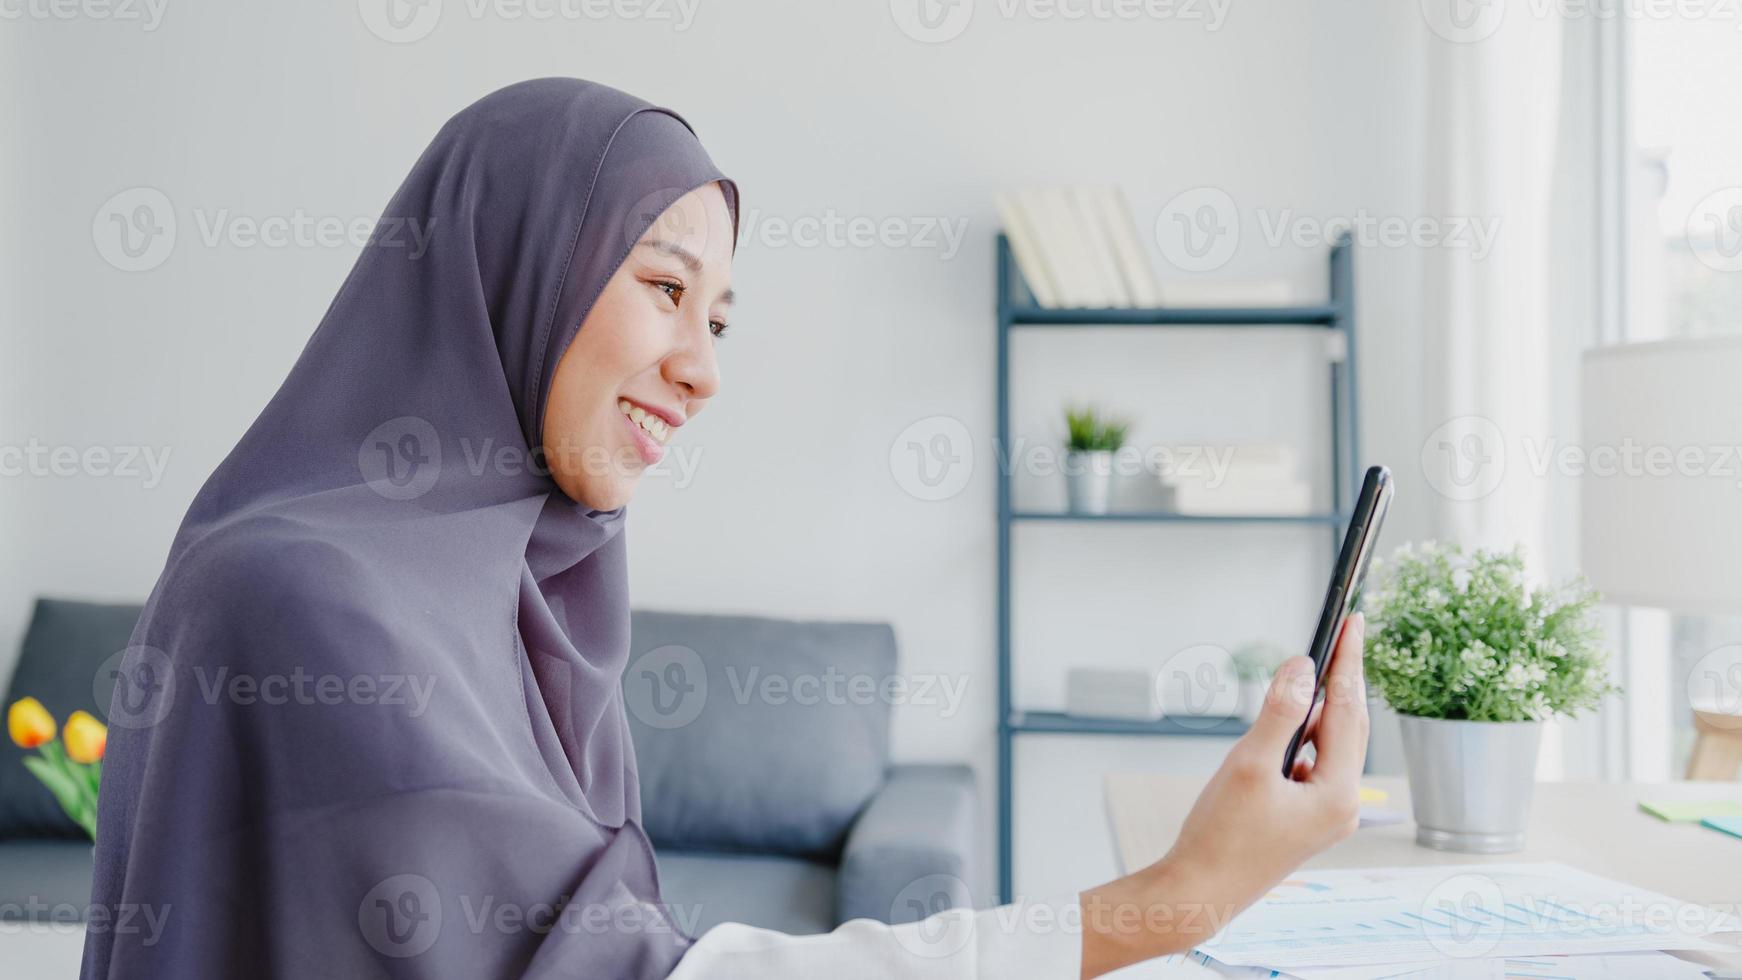 Junge asiatische muslimische Geschäftsfrau, die Smartphone verwendet, spricht mit einem Freund per Videochat-Brainstorming-Online-Meeting, während sie von zu Hause aus im Wohnzimmer arbeitet. soziale Distanzierung, Quarantäne wegen Corona-Virus. foto